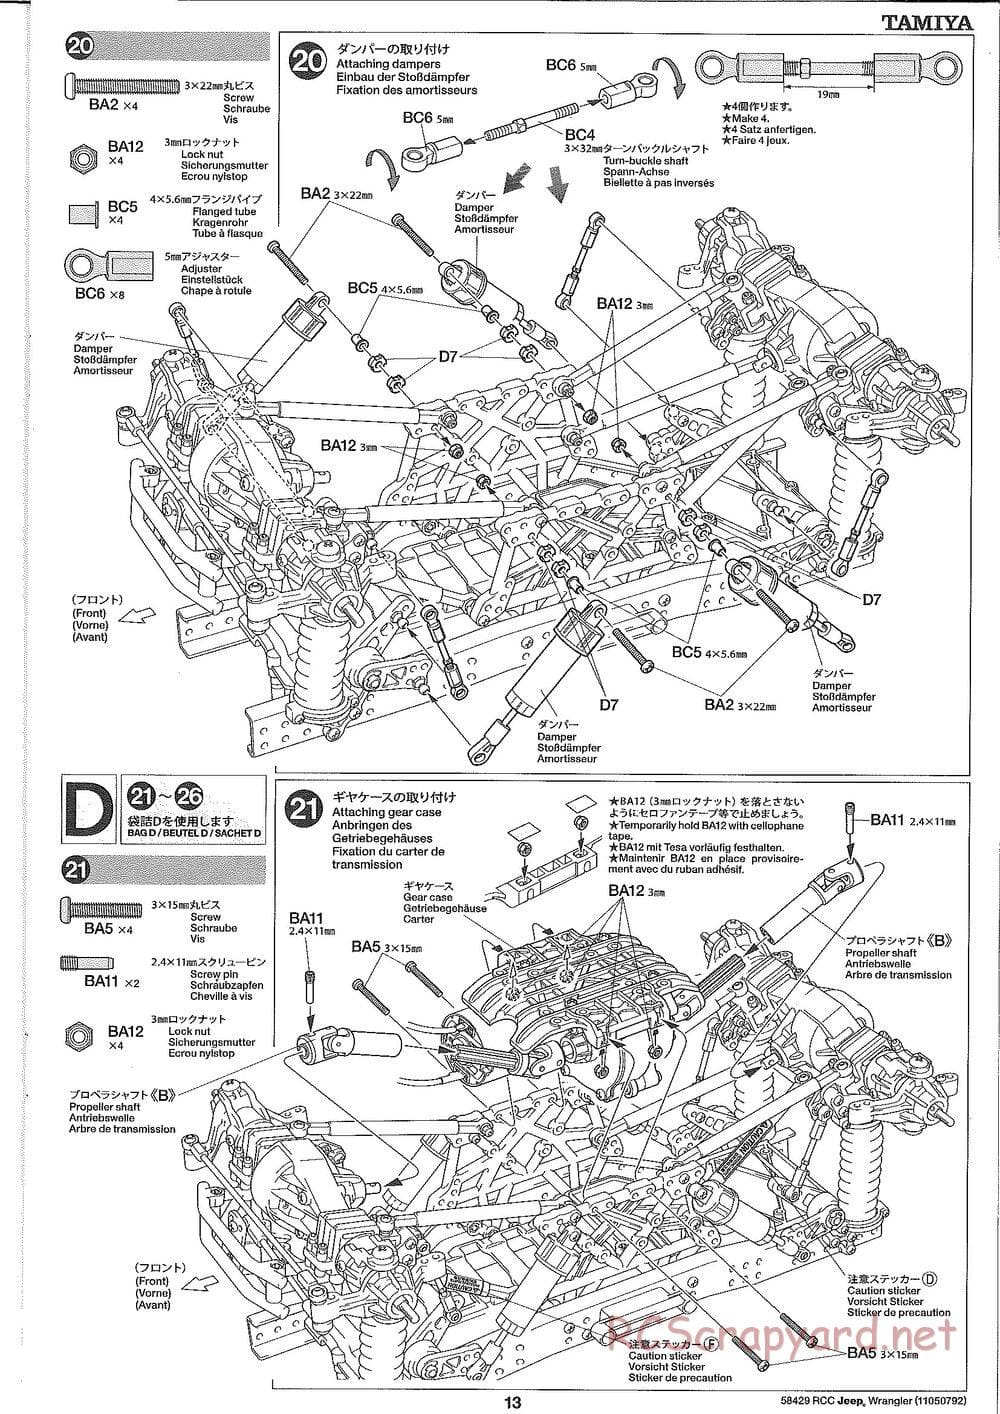 Tamiya - Jeep Wrangler - CR-01 Chassis - Manual - Page 13